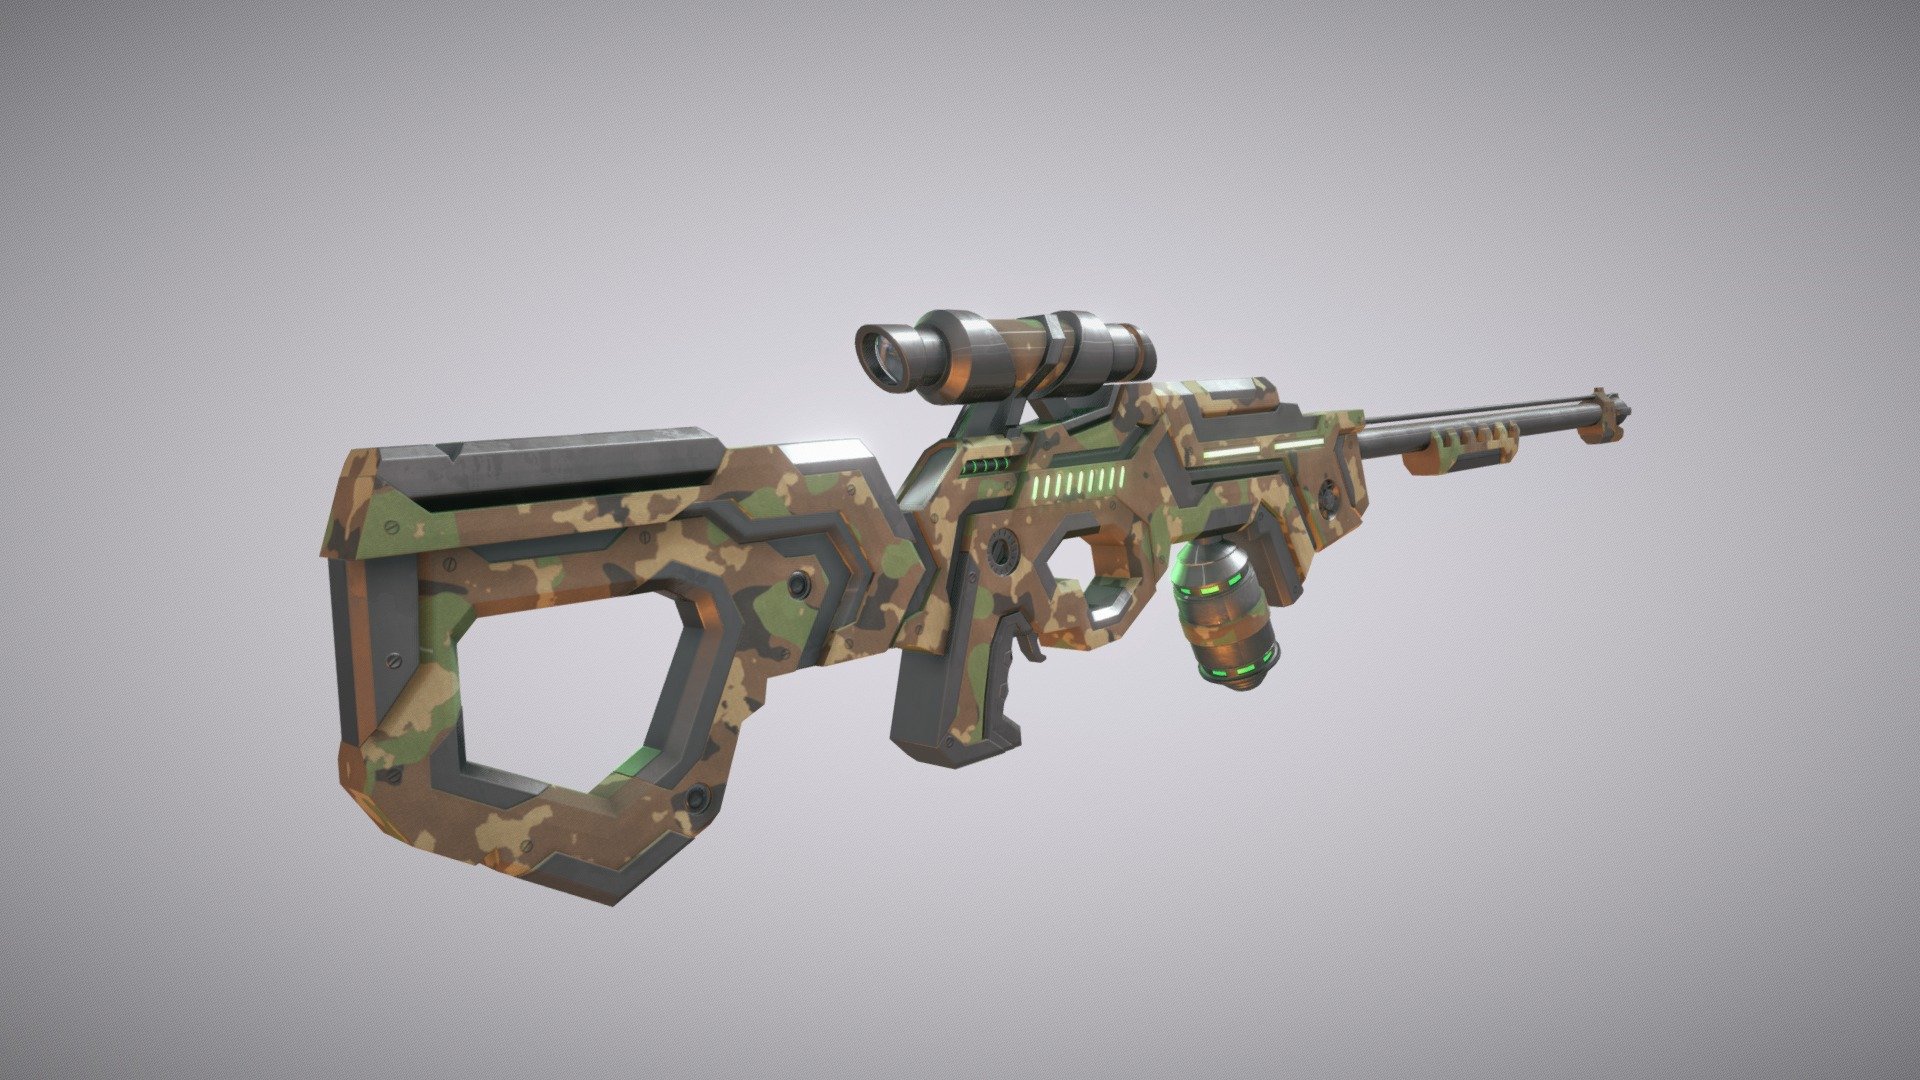 SciFi Gun for fun - SciFi Gun - Buy Royalty Free 3D model by dionne 3d model